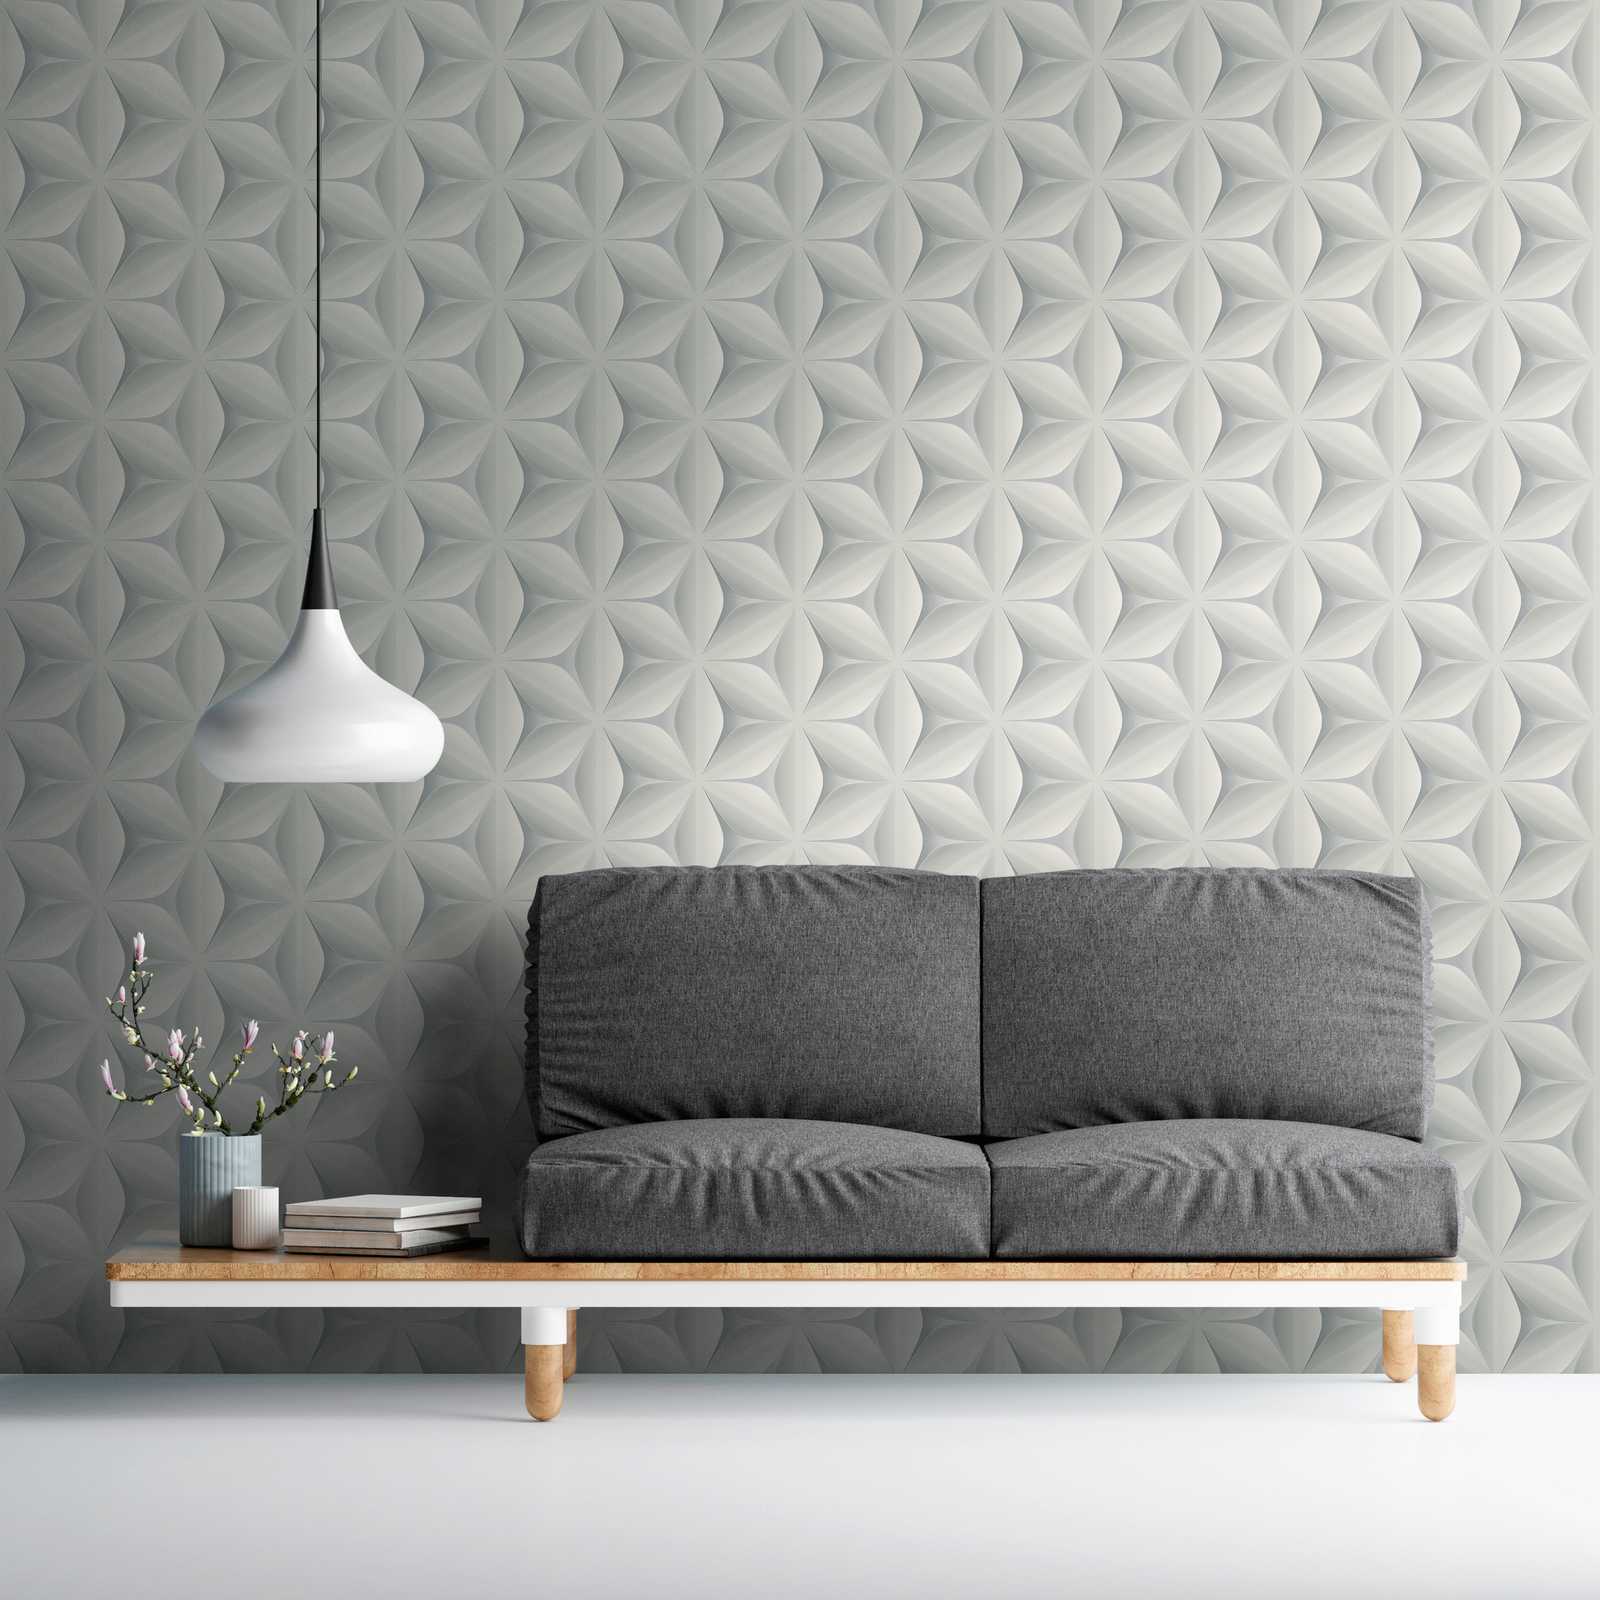             Vintage behang Scandinavisch patroon - grijs
        